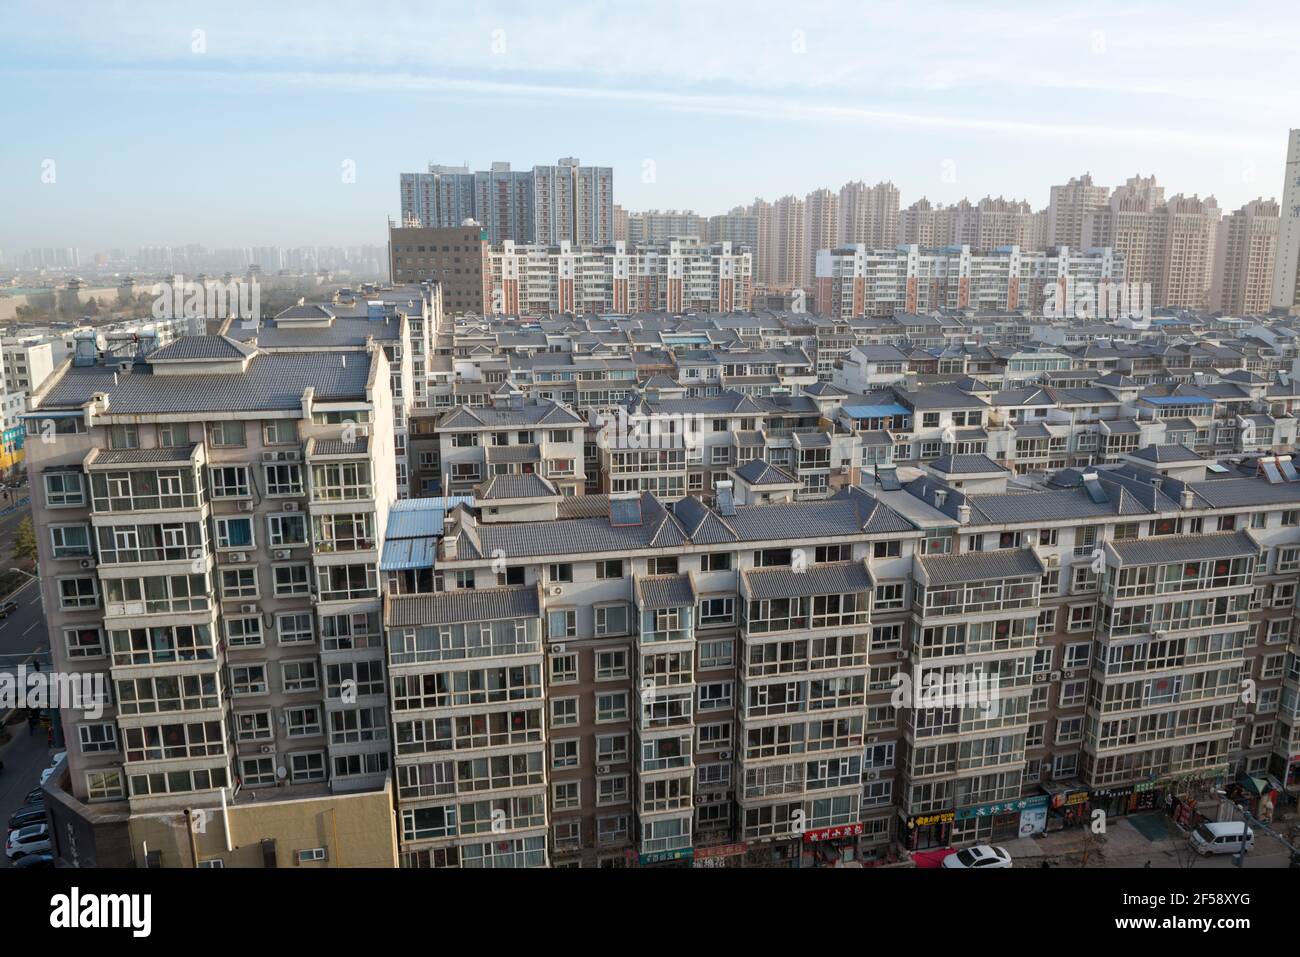 Costruzione di alloggi nel centro di Datong, Shanxi, Cina. L'immagine mostra l'antica cinta muraria della dinastia Ming. Foto Stock